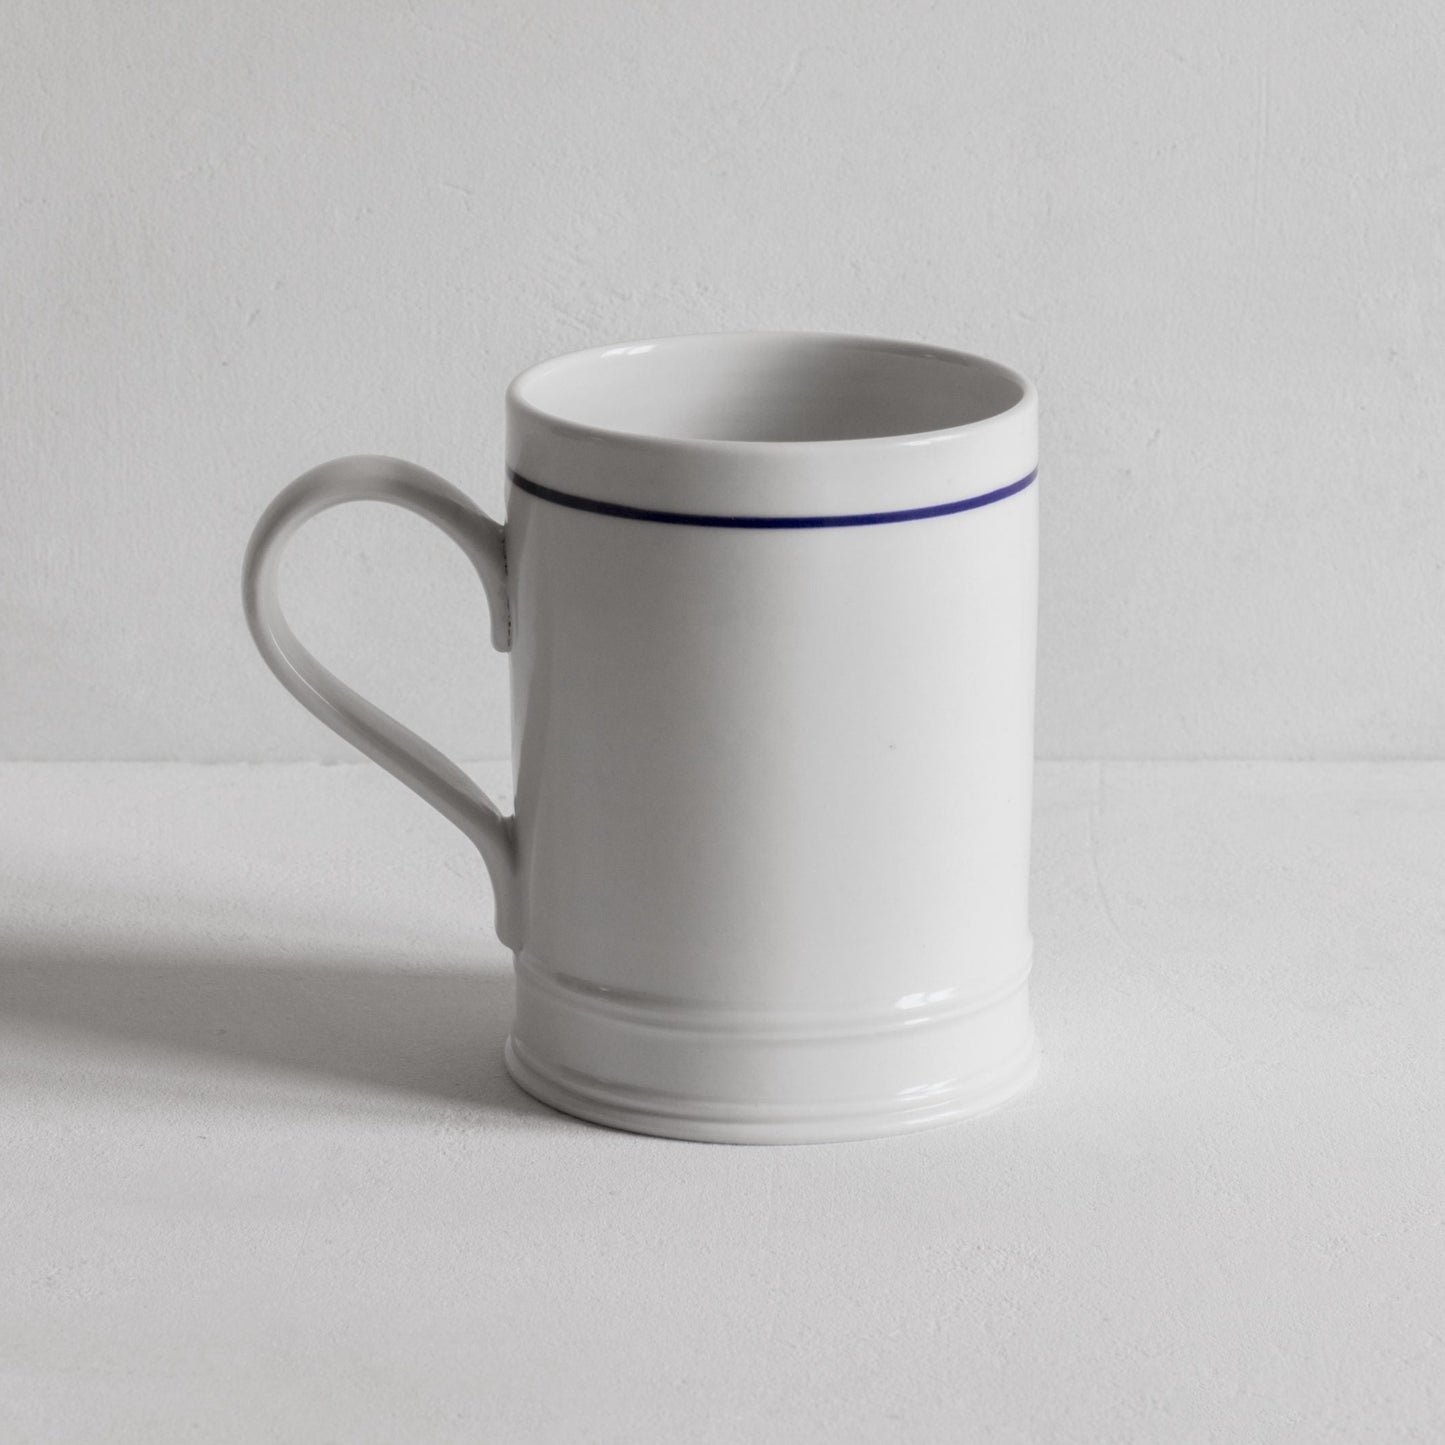 Classical Mug with a blue line